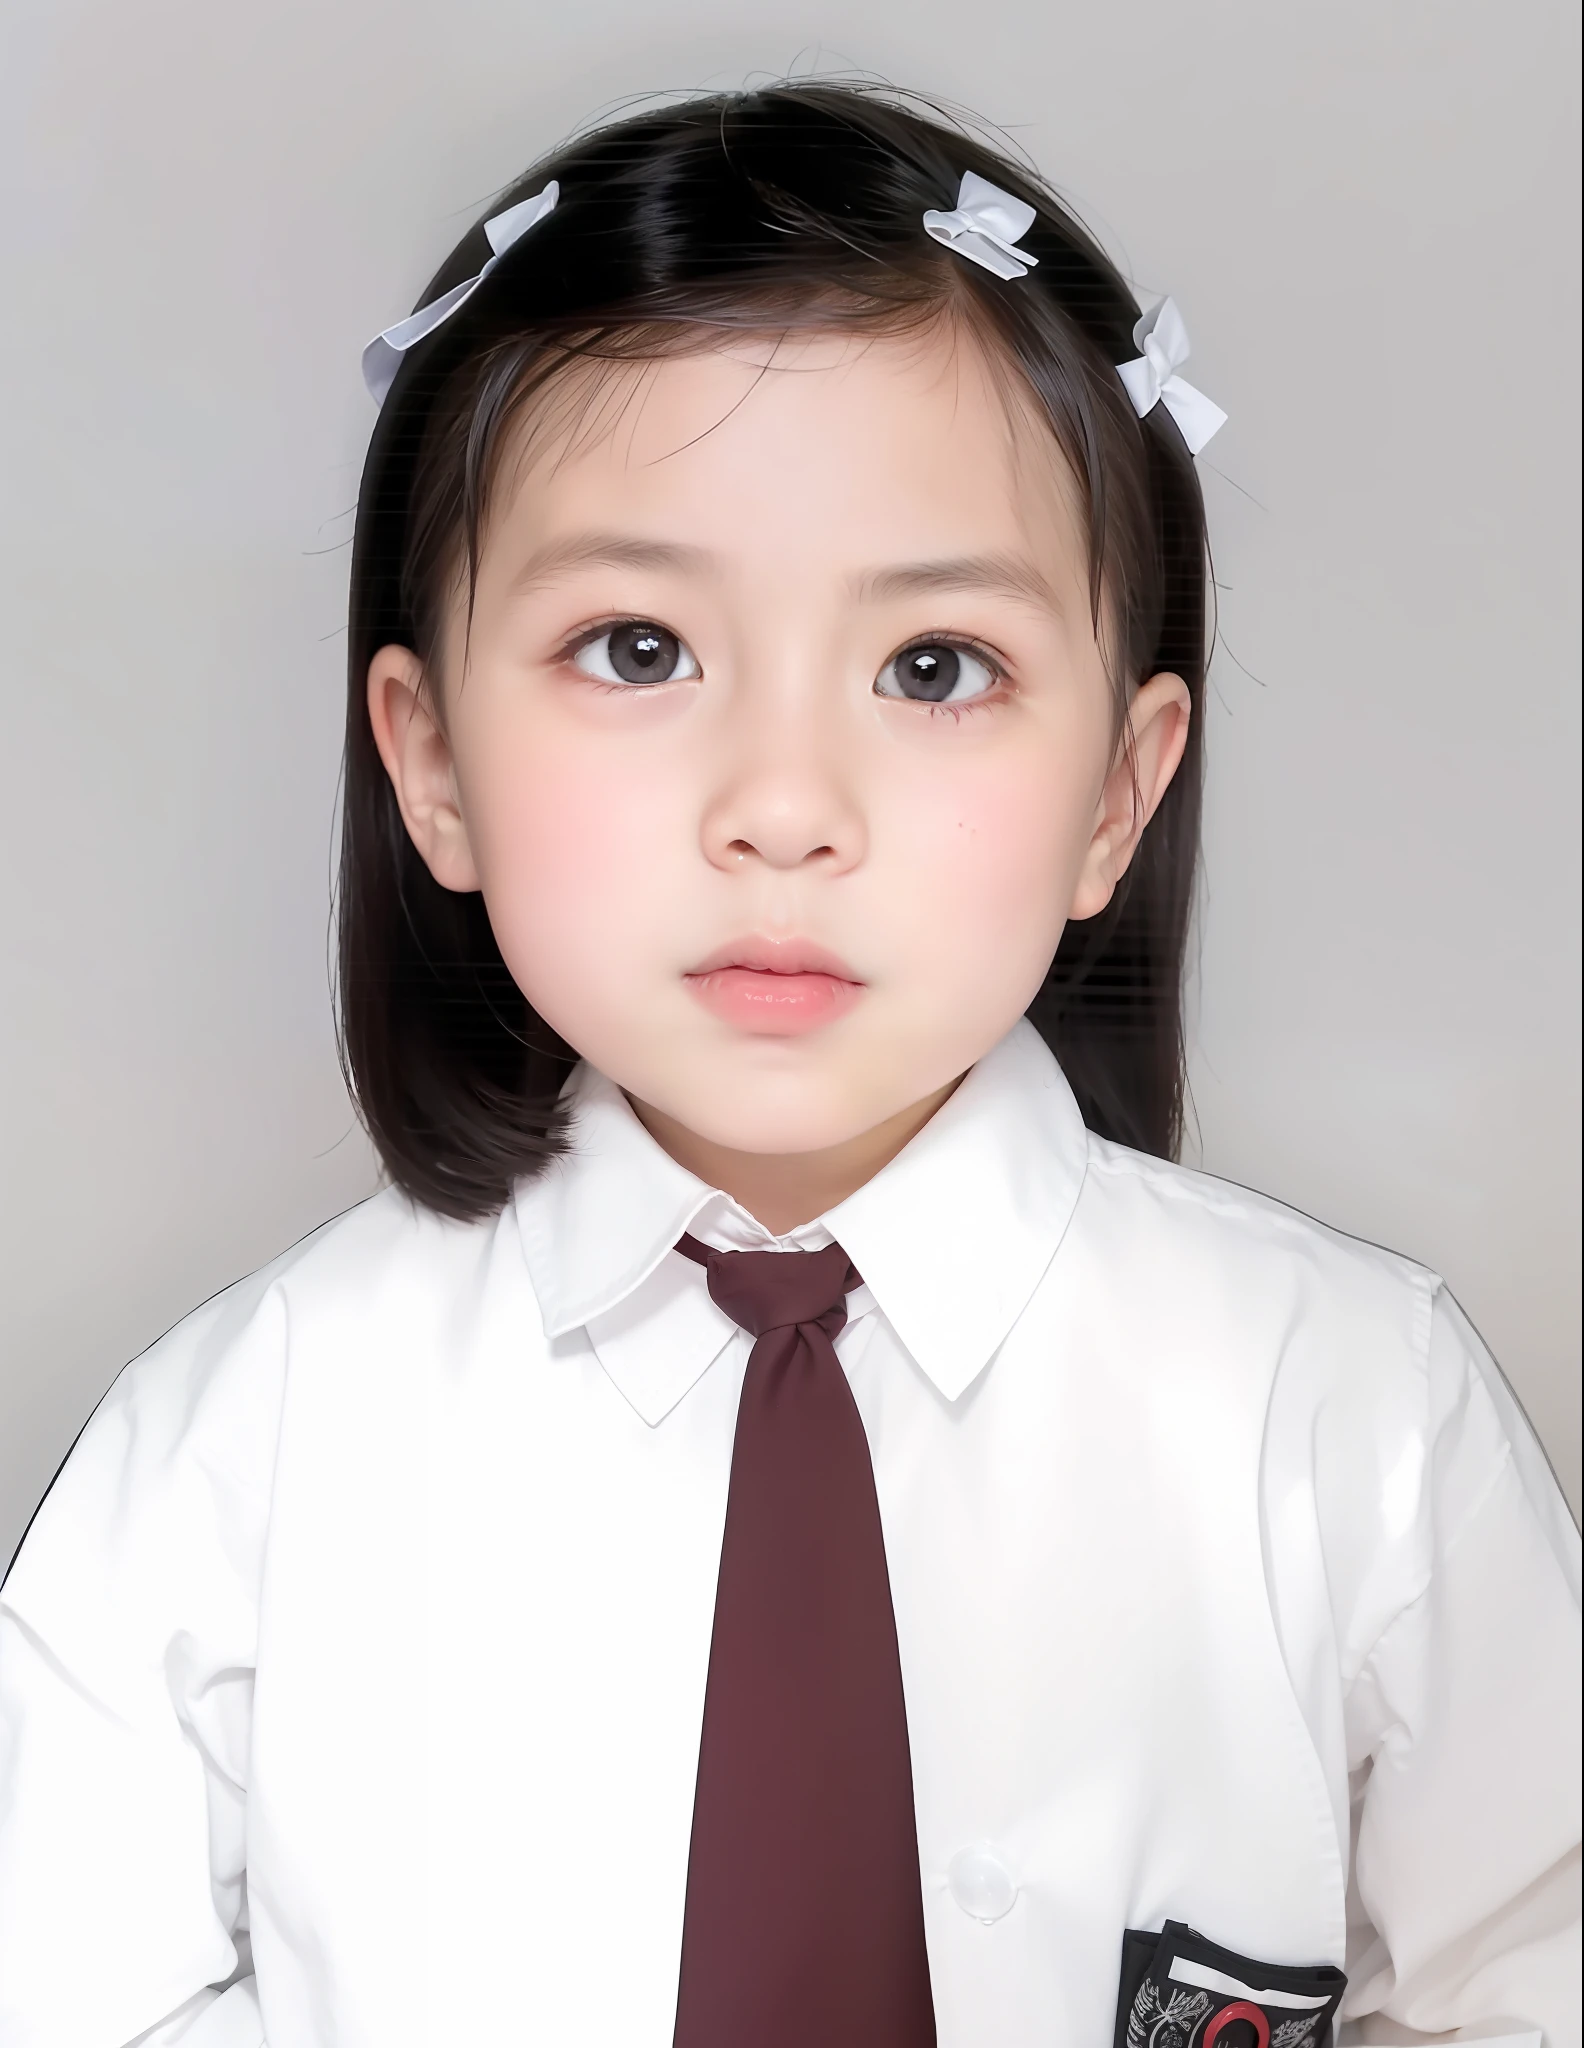 moderner Stil, roter Hintergrund, Kinder-Passfoto, Schön, schwarze Augen, Flache Zehenpartie, Krawatte